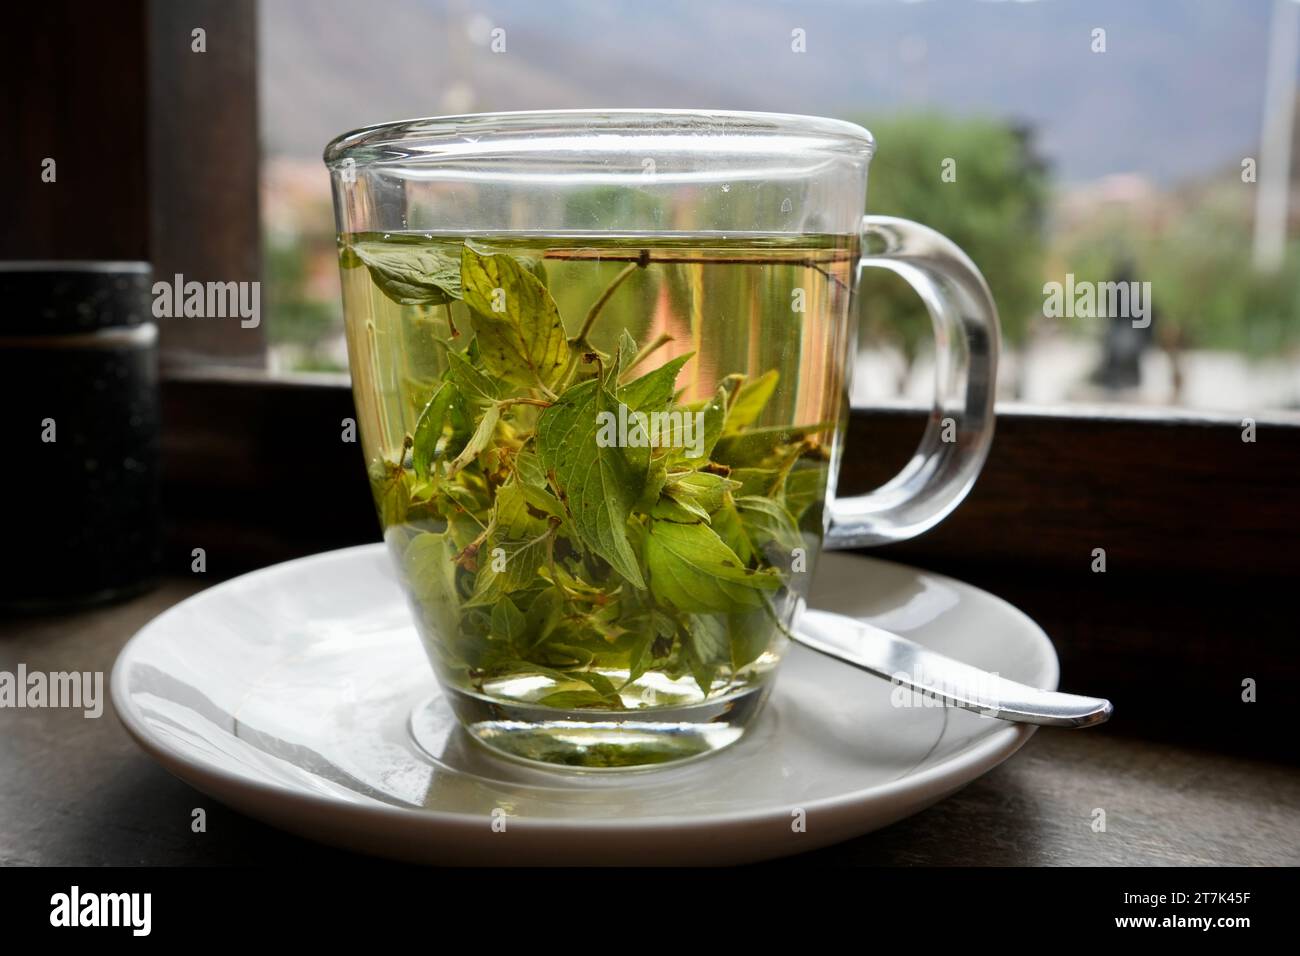 Tasse grüner Coca-Tee in einer klaren Glasschale auf einer Untertasse mit einem Löffel. Stockfoto